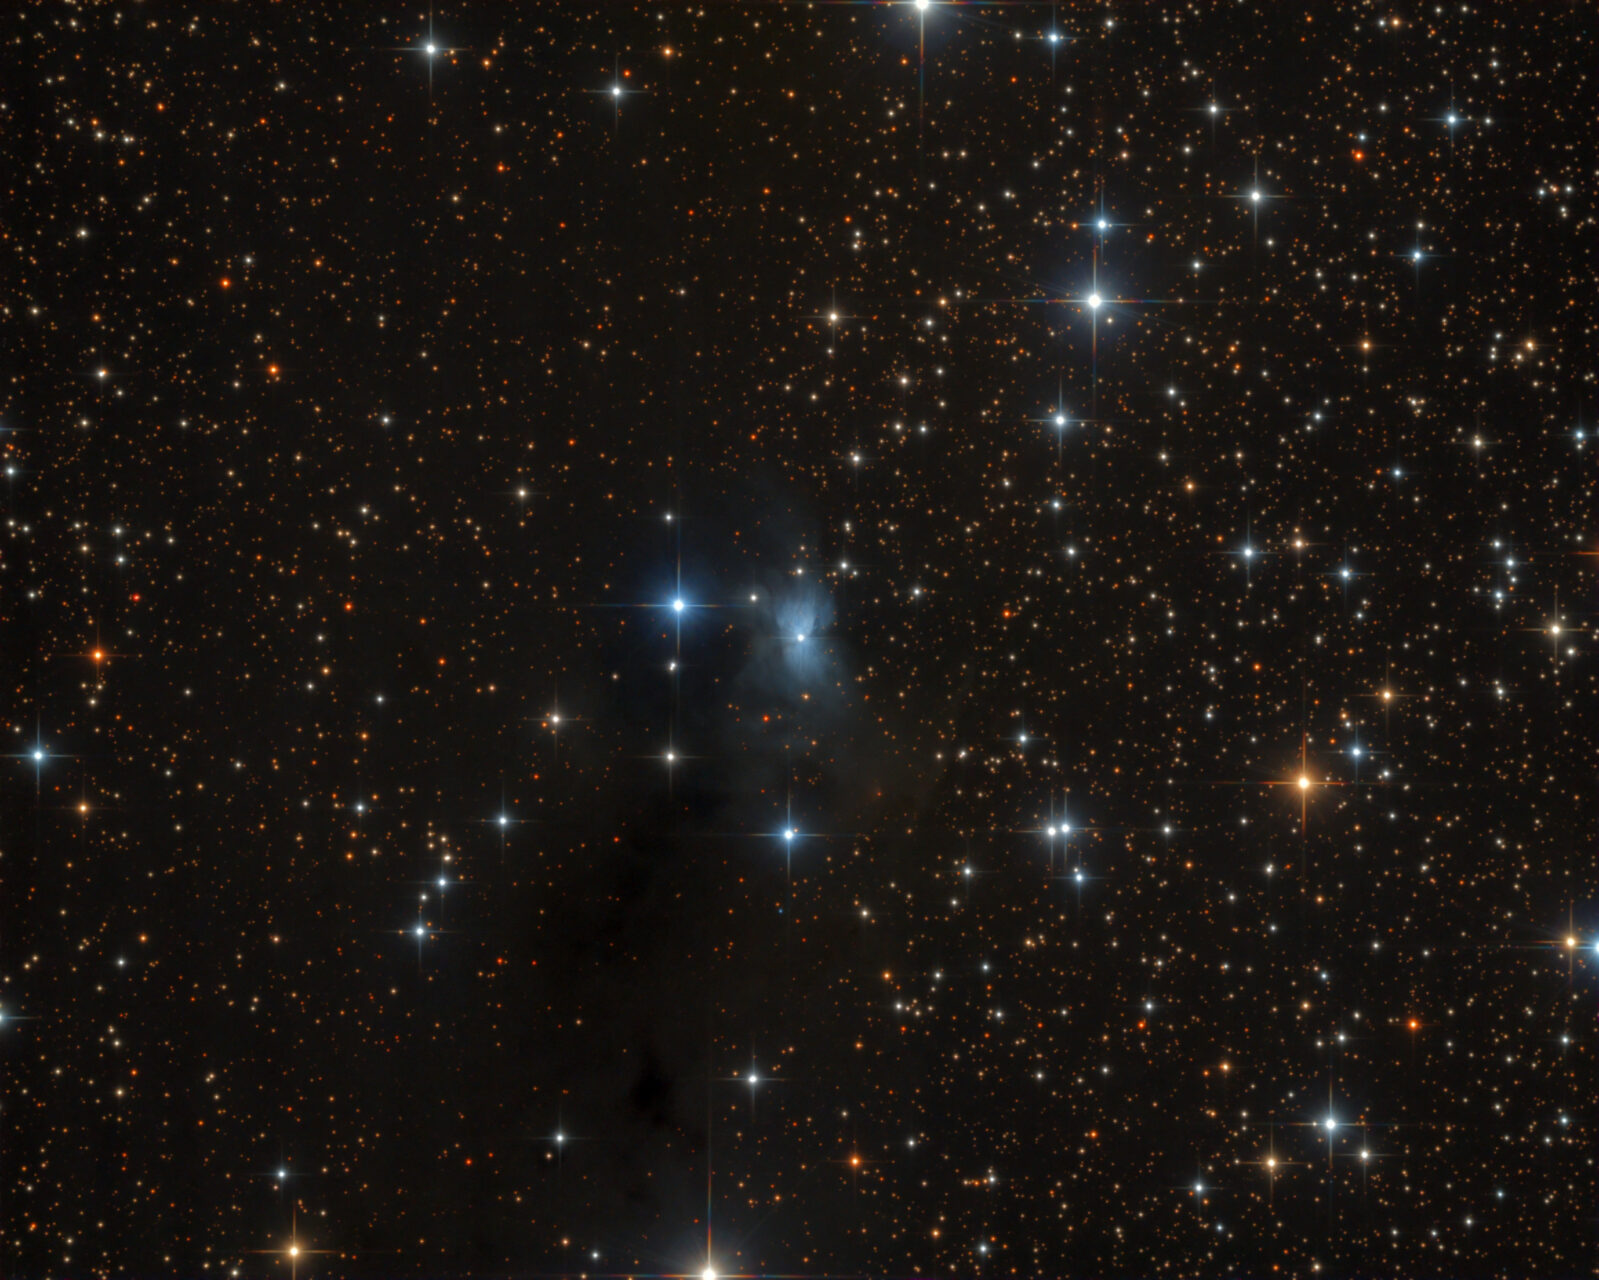 NGC 2163